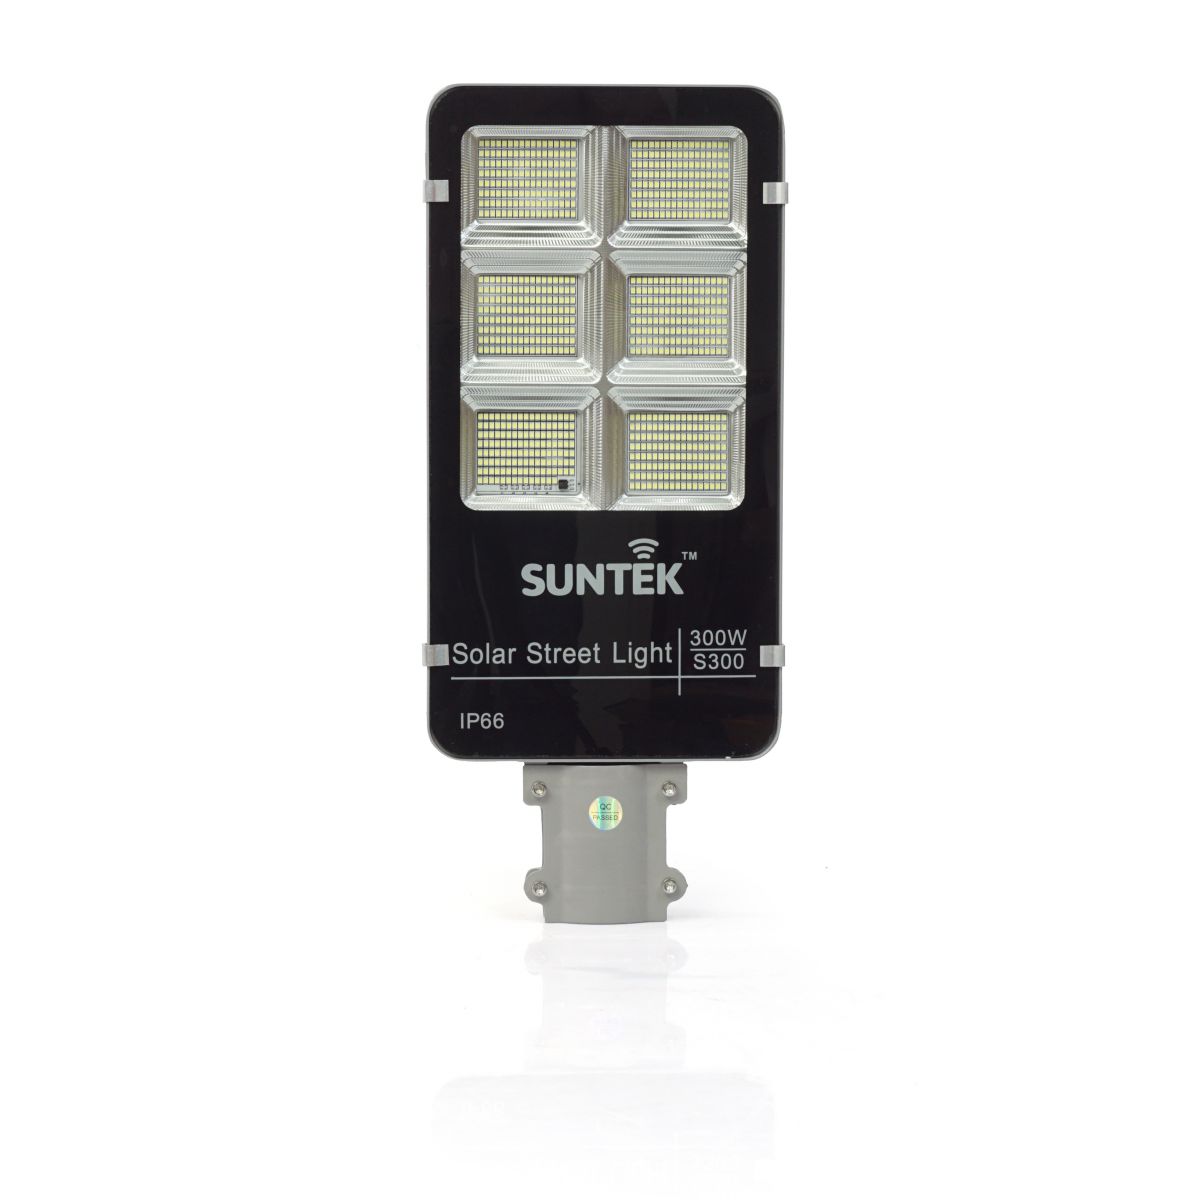 Đèn Đường Năng Lượng Mặt Trời SUNTEK LED Solar Street Light S300 300W - Chiếu sáng liên tục 16 giờ | Tuổi thọ 6-7 năm | Chống Nước/Bụi/Sét | Tự động Bật/Tắt | Điều khiển Từ xa - Hàng Chính Hãng - Bảo hành 2 năm 1 đổi 1